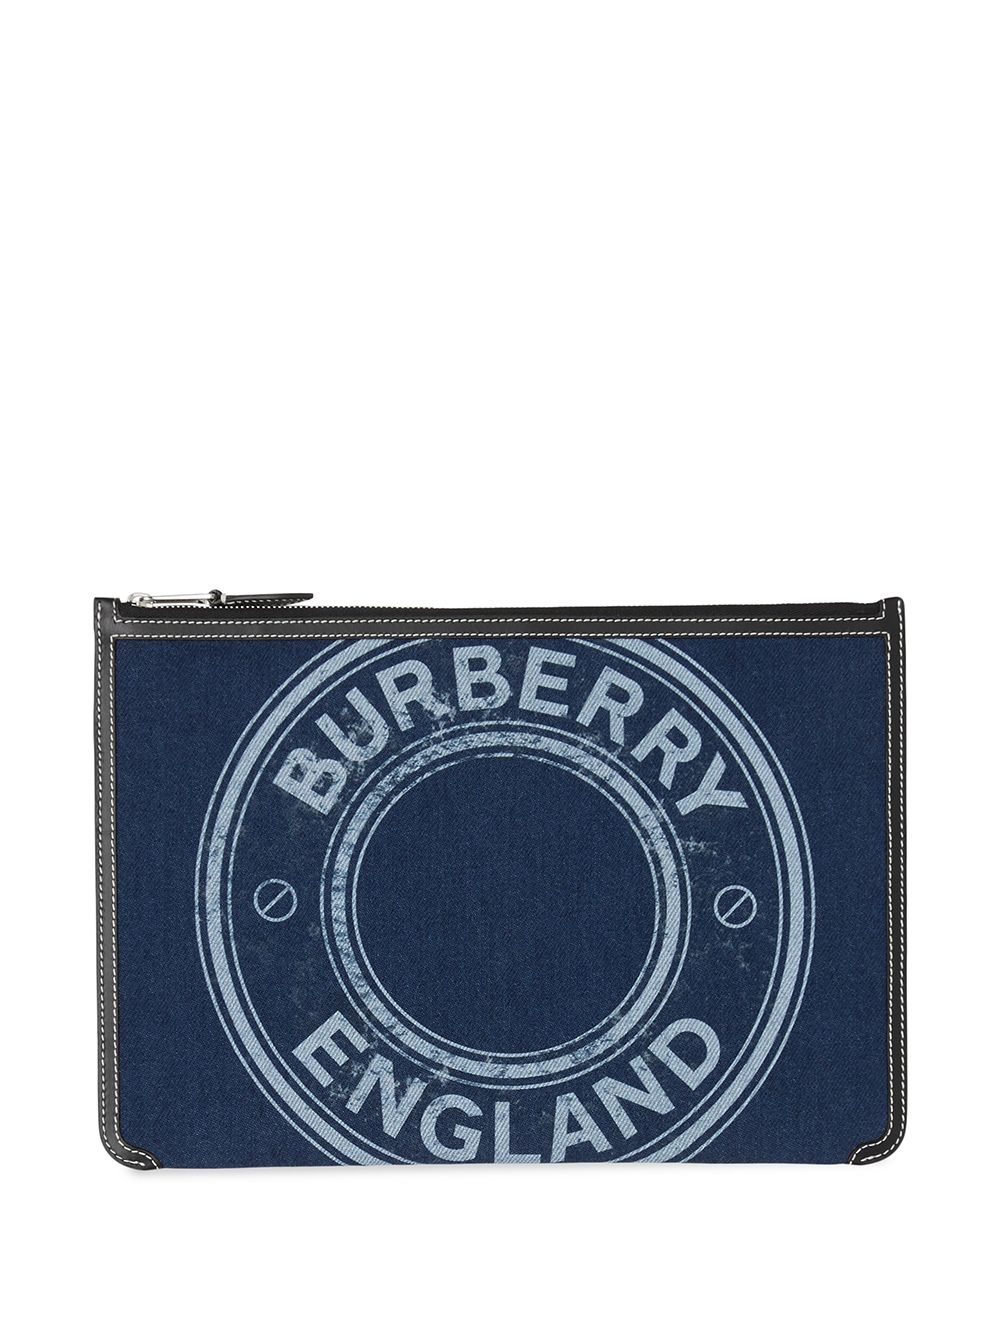 фото Burberry клатч на молнии с логотипом